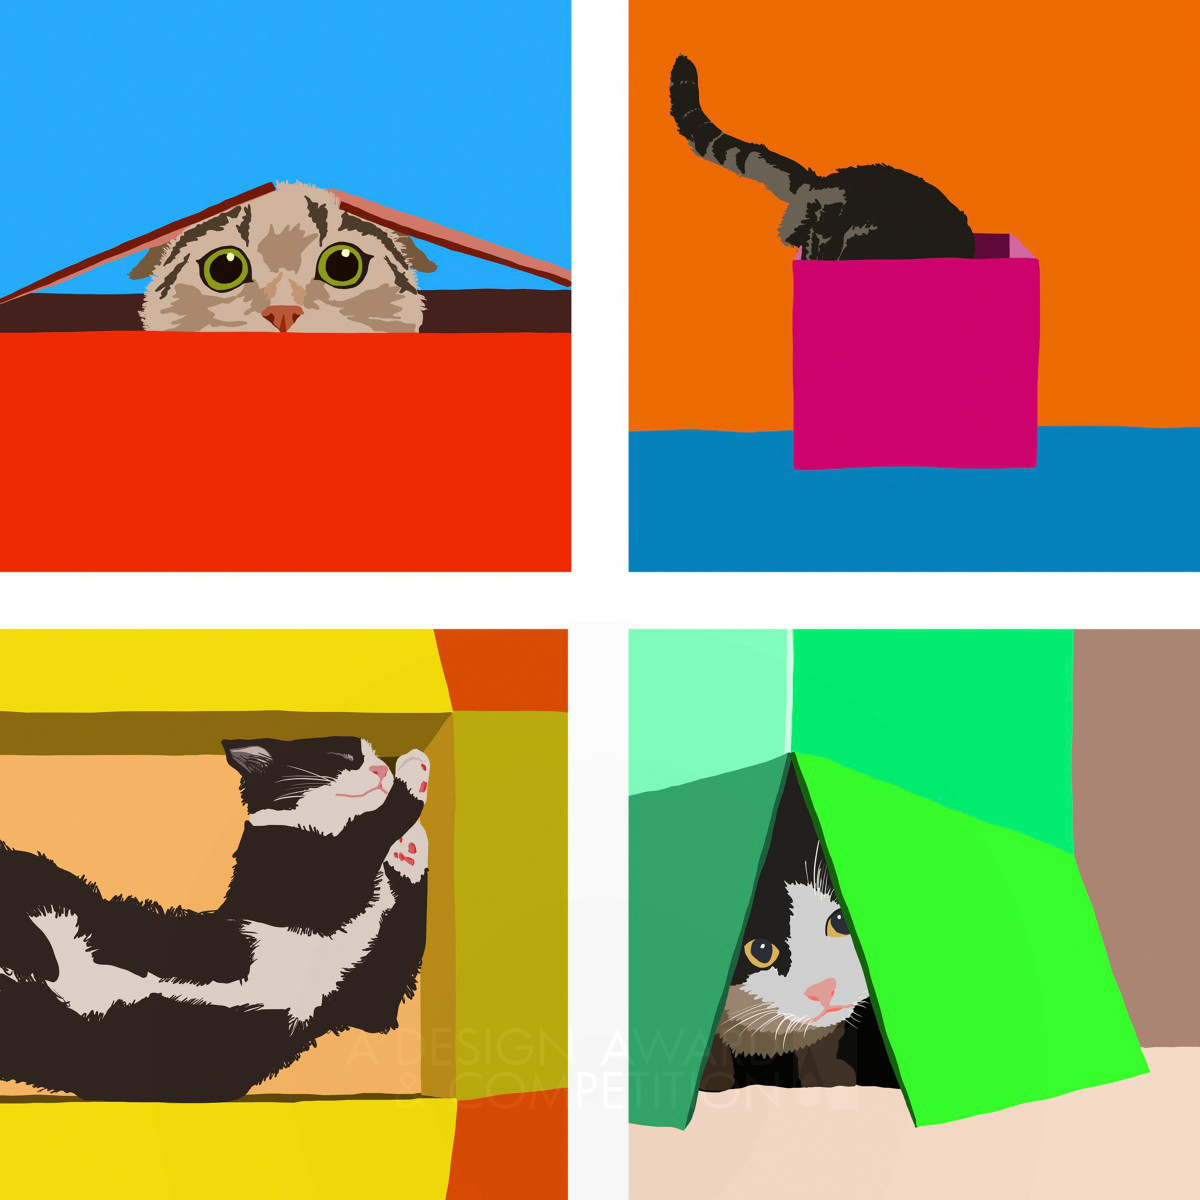 Cats in a Box Communication Design by Daniel da Hora